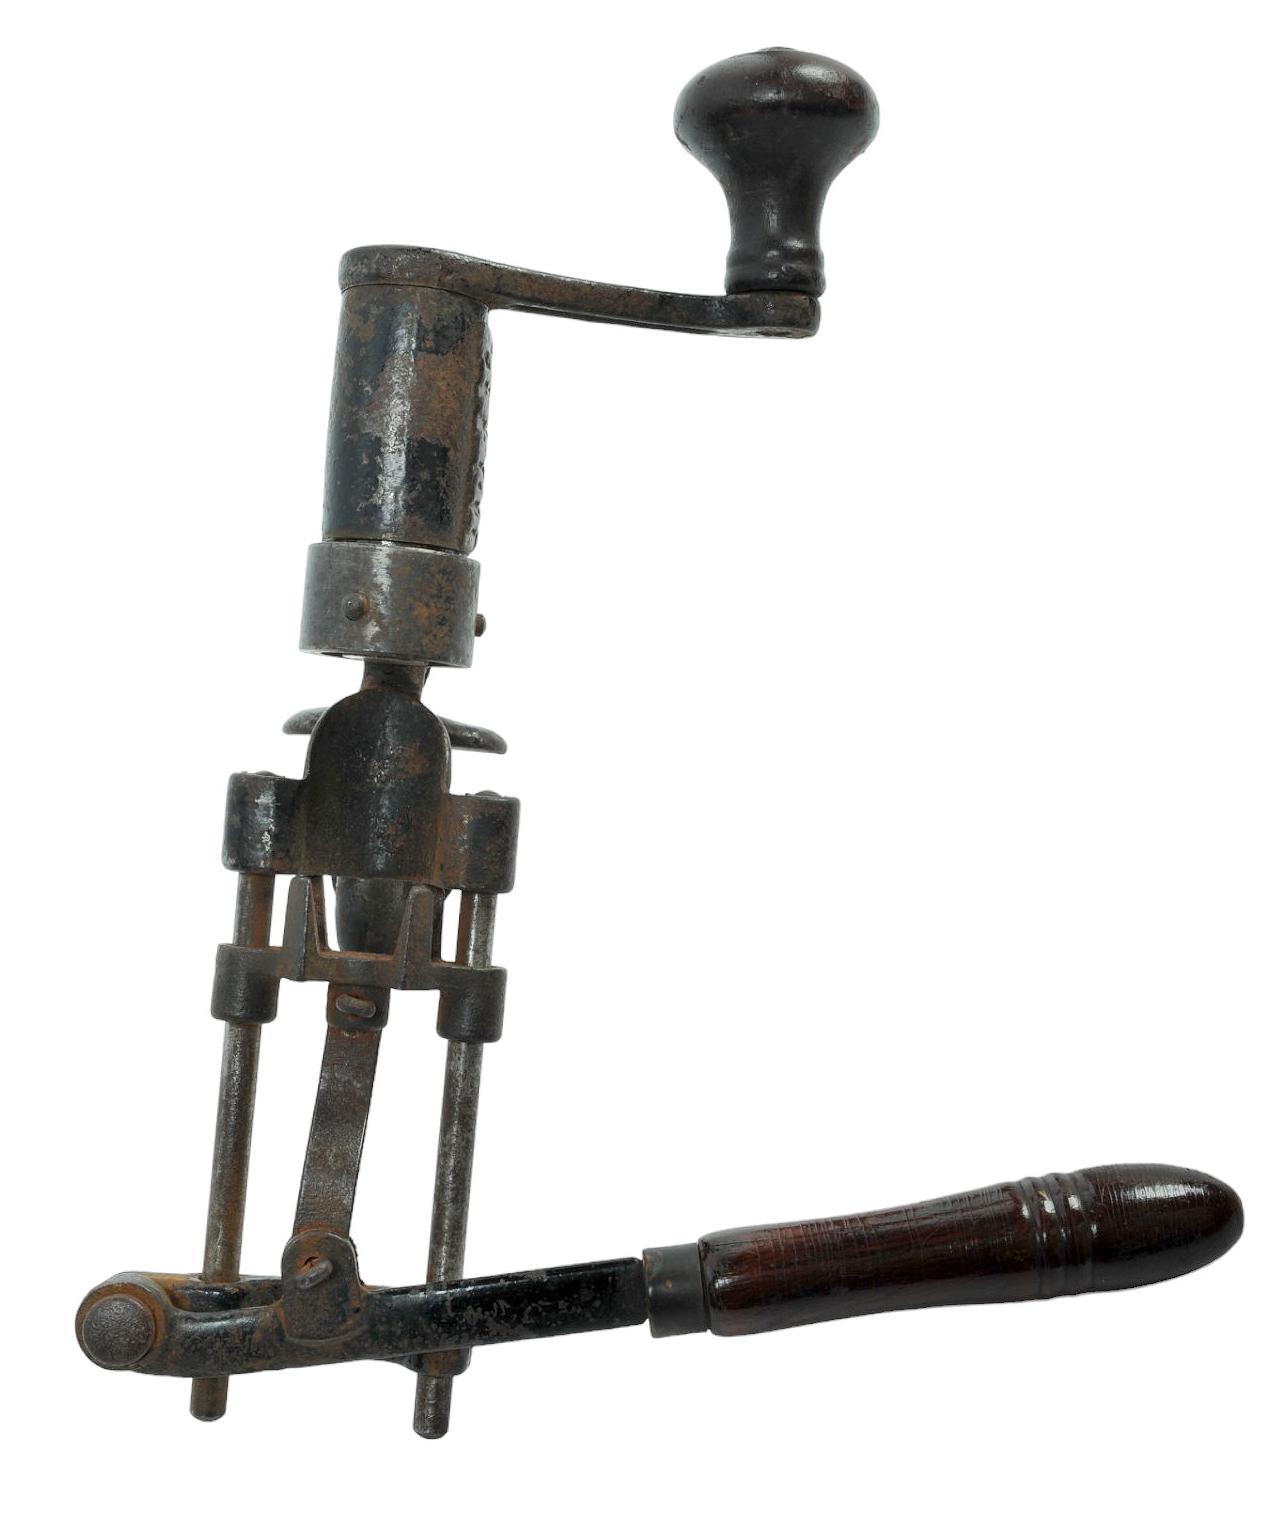 Scarce 1898 Antique Gun Reloading and Gunsmithing Tools (RM)